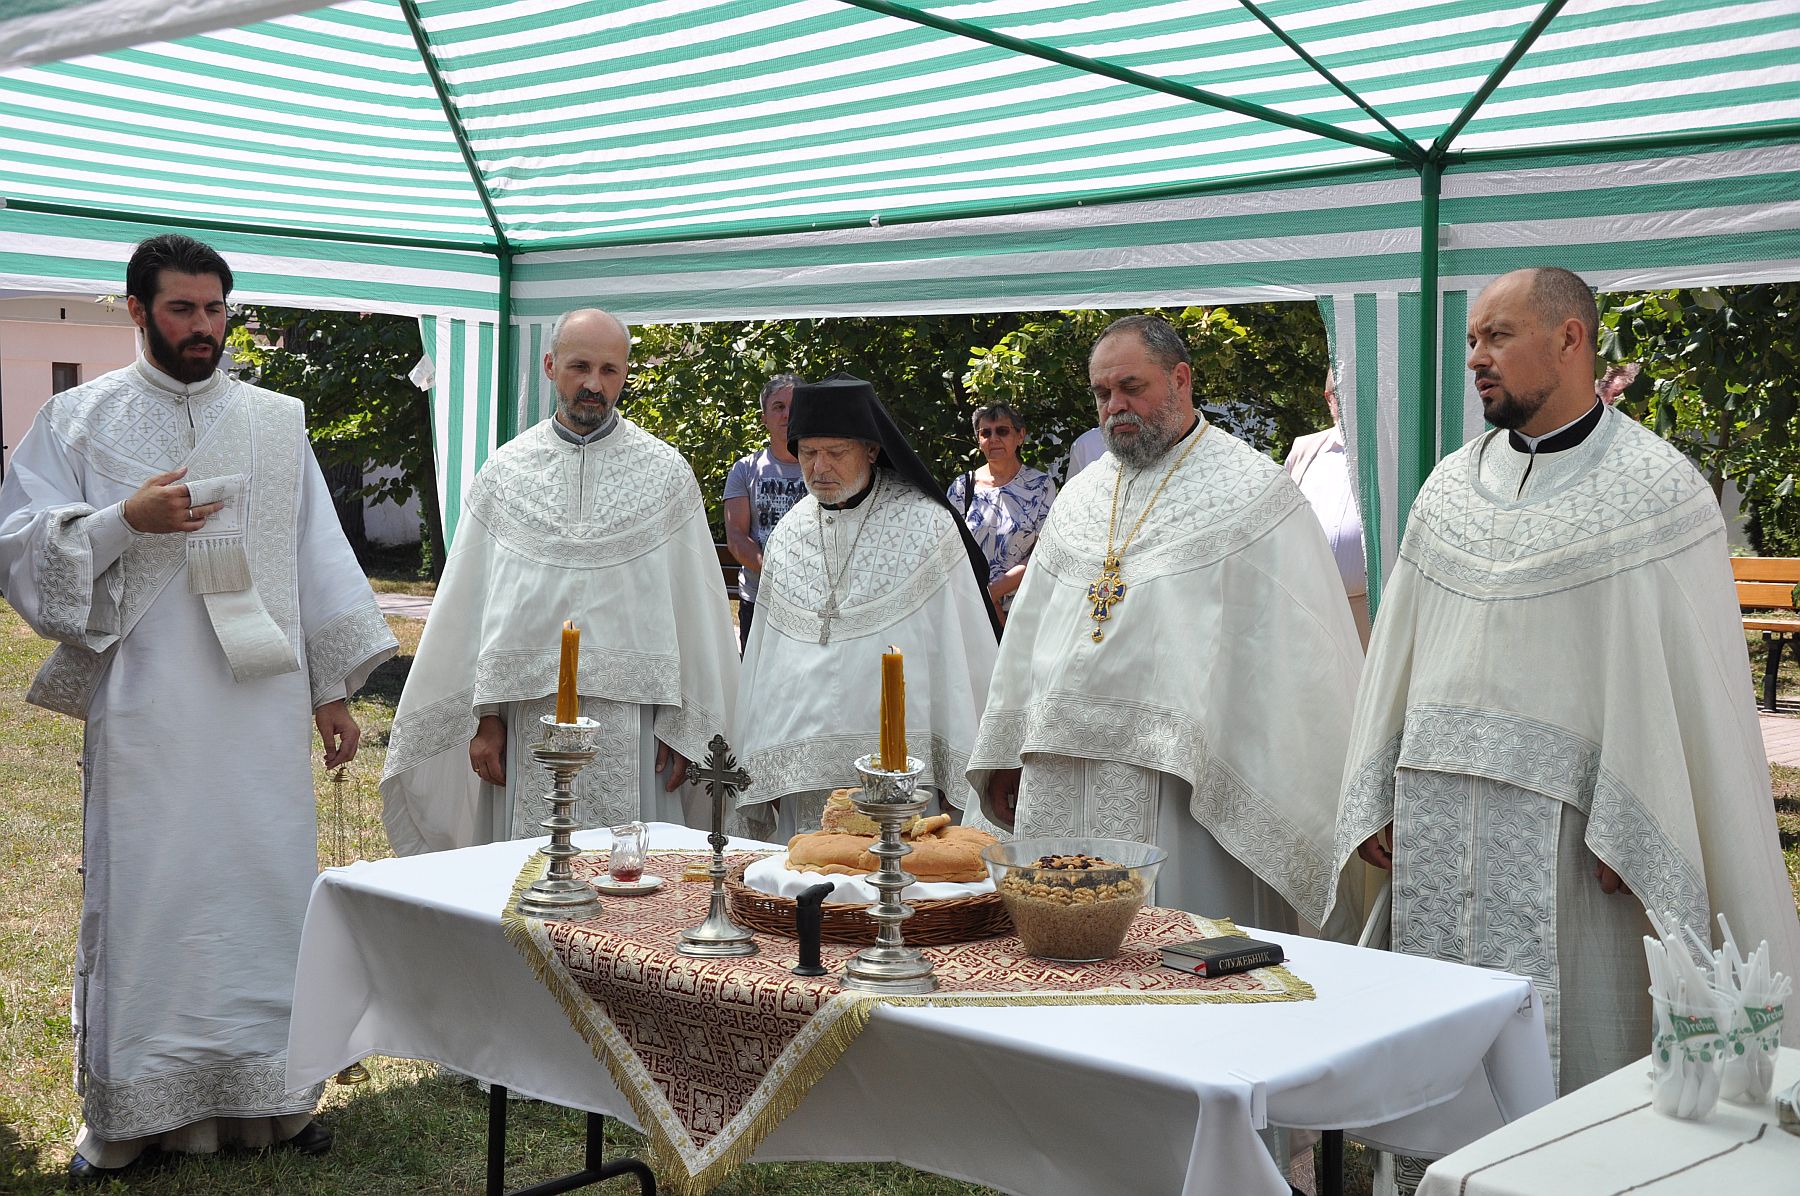 Iván-napi búcsú szombaton - délután is látogatható lesz a szerb-ortodox templom